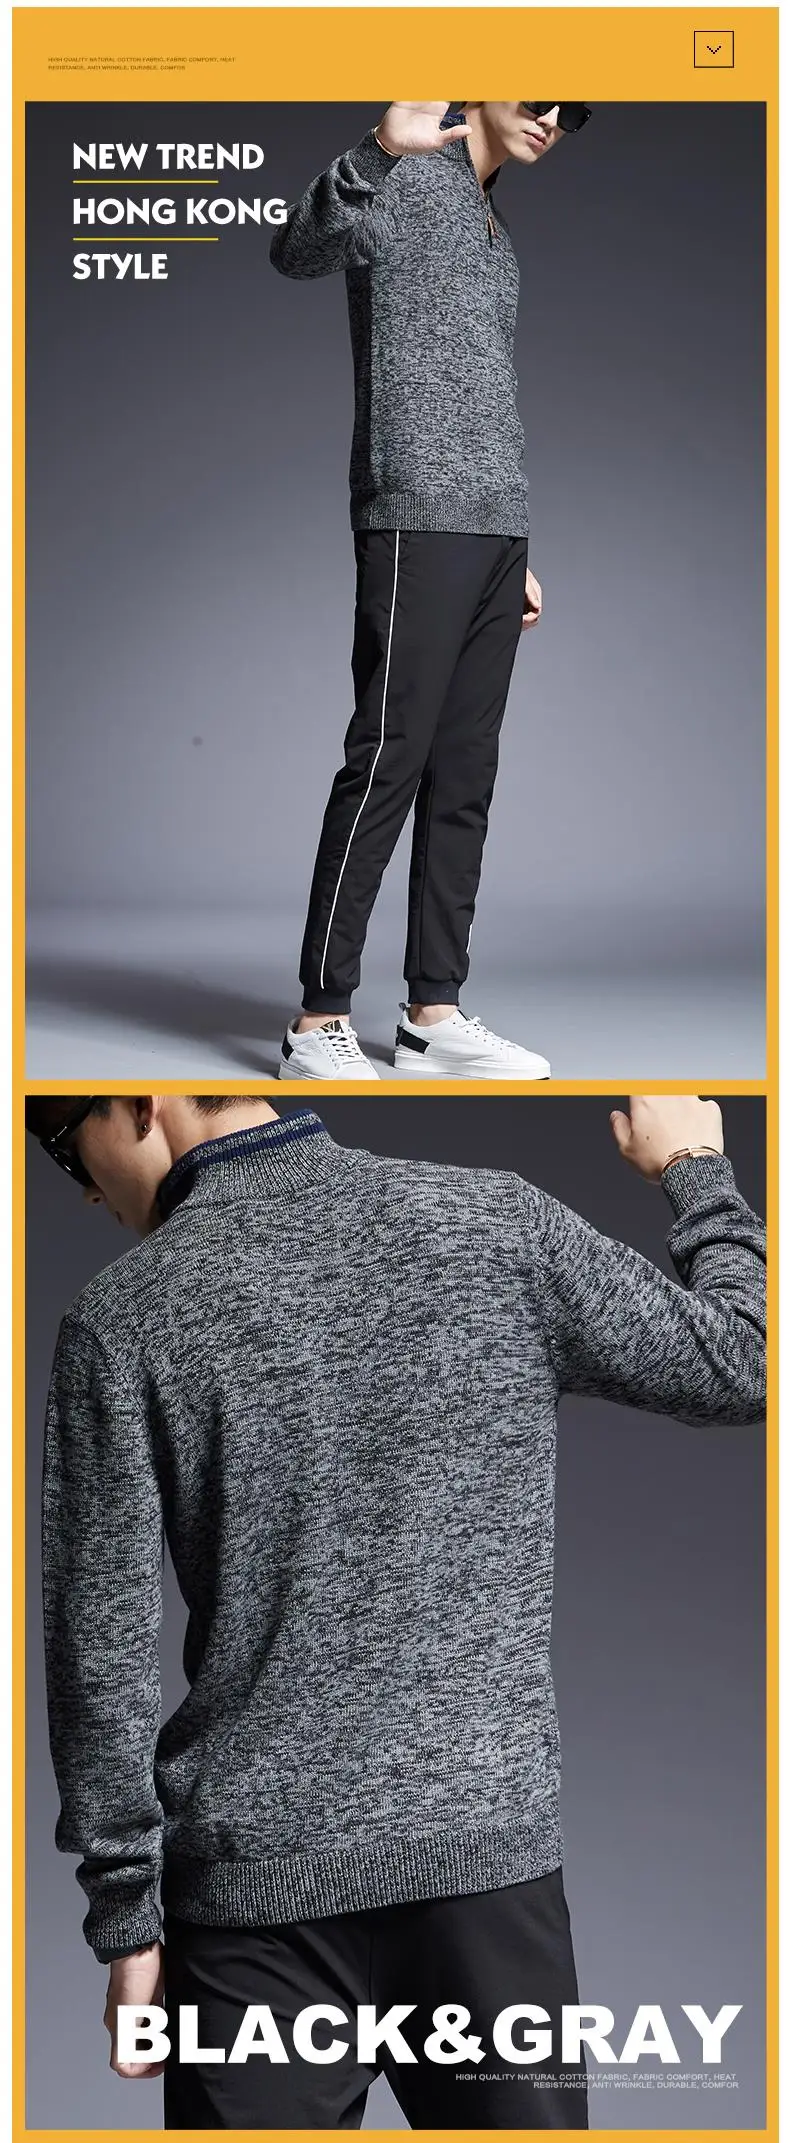 2019 новый модный бренд свитер для мужчин пуловеры Slim Fit Джемперы трикотажная кофта Осень корейский стиль повседневное мужская одежда